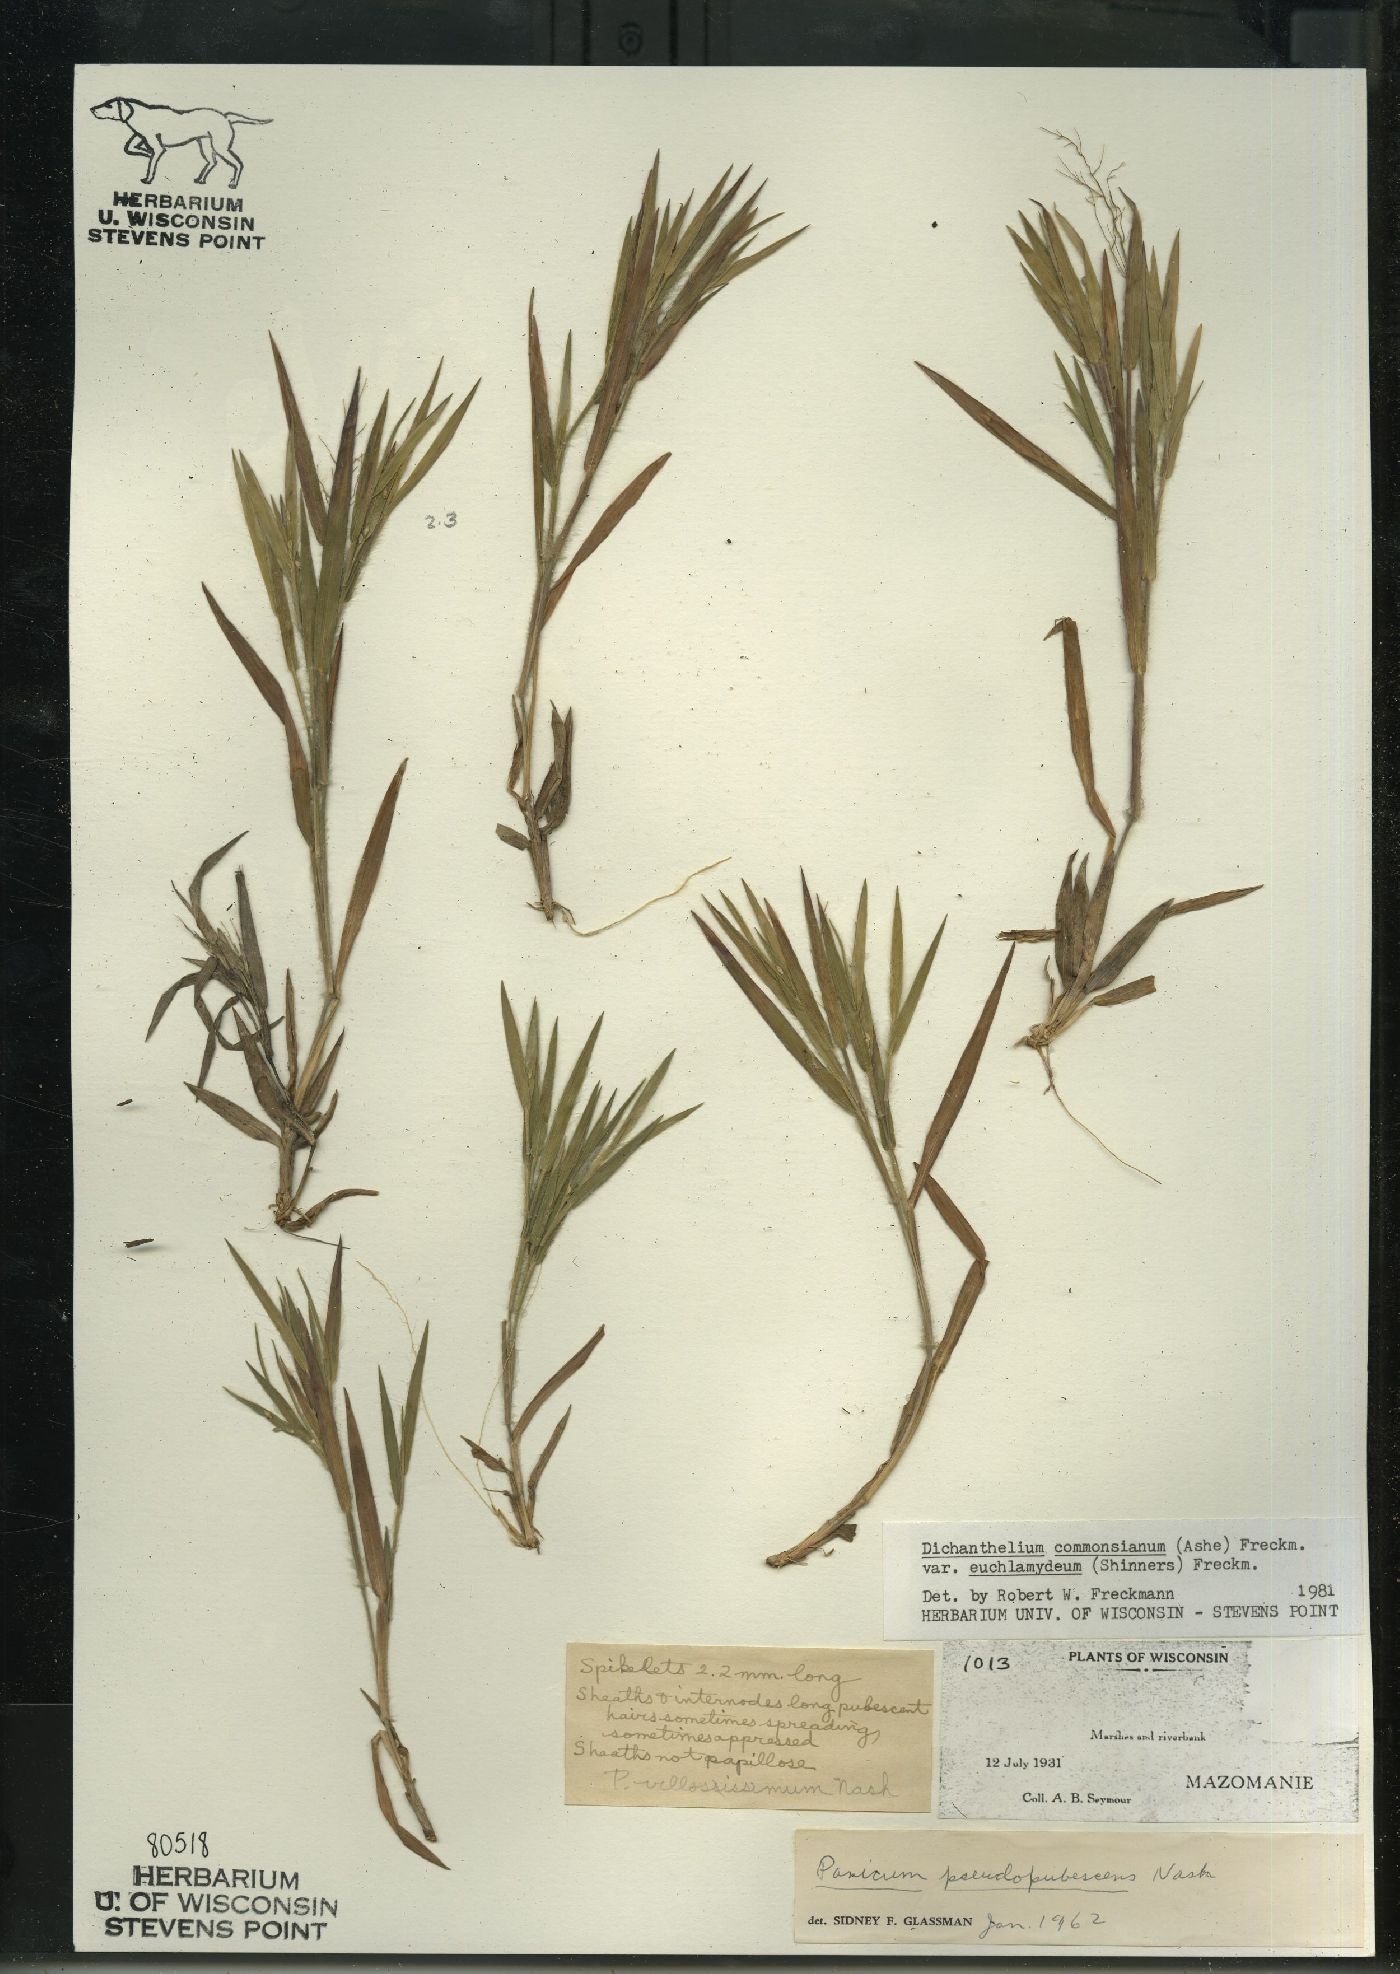 Dichanthelium commonsianum var. euchlamydeum image